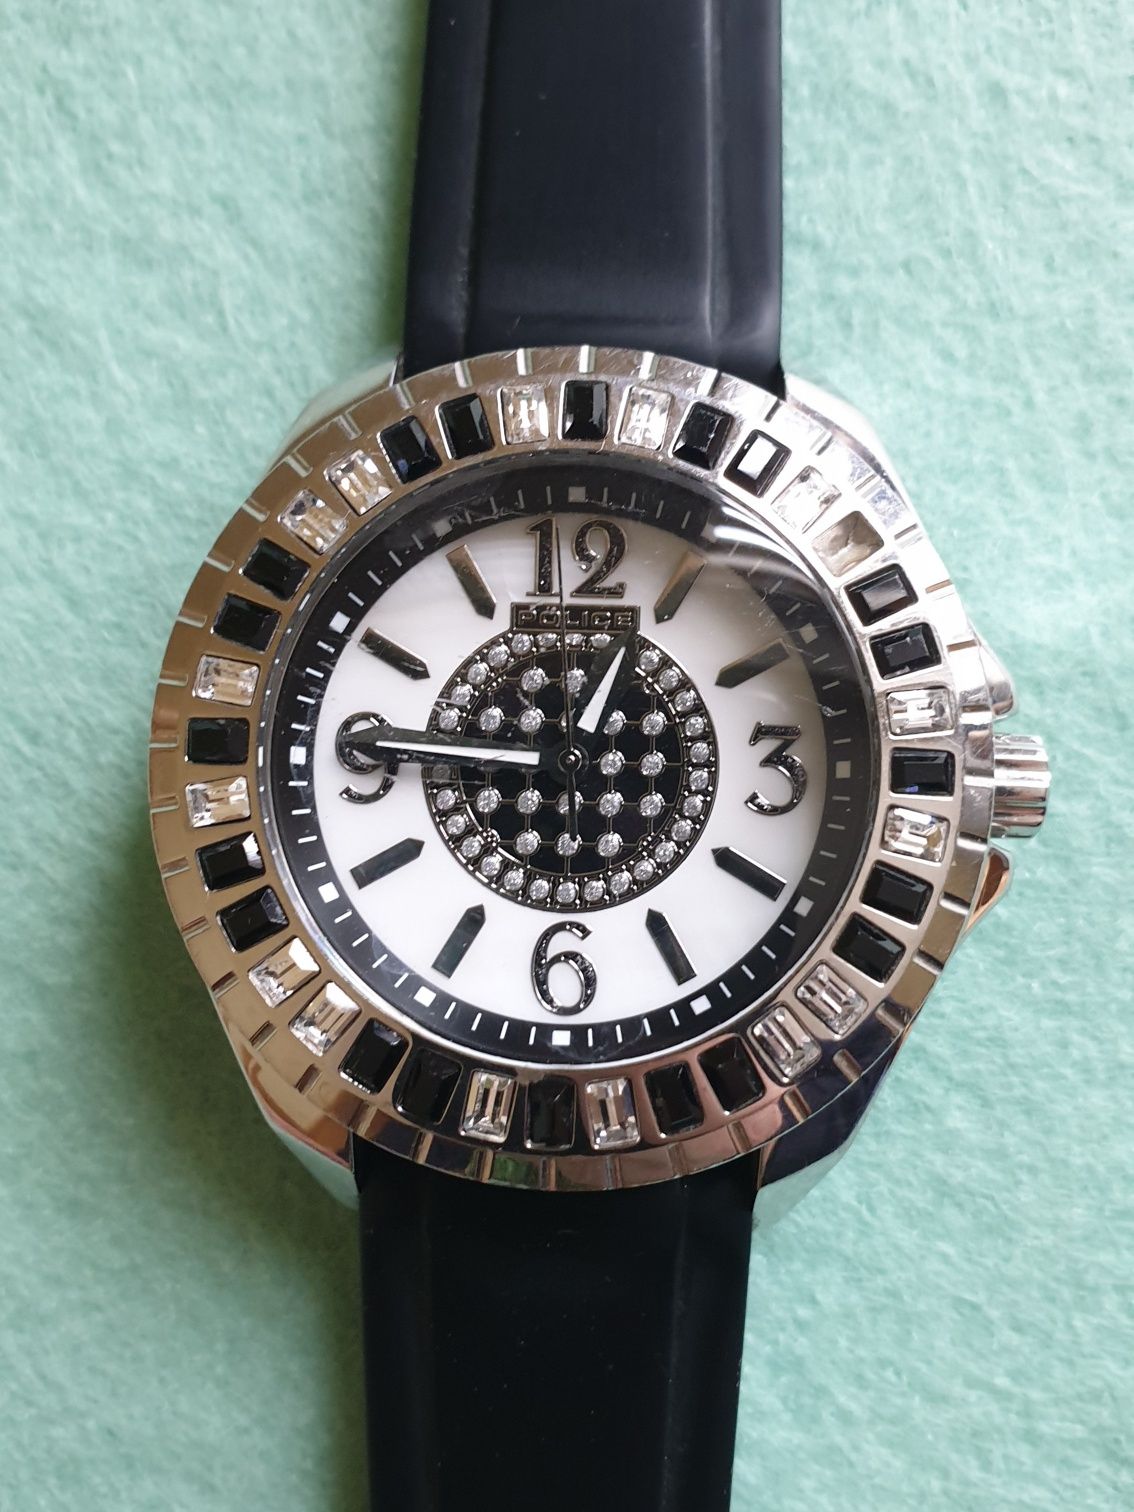 Zegarek analogowy na rękę POLICE model 13090J unisex